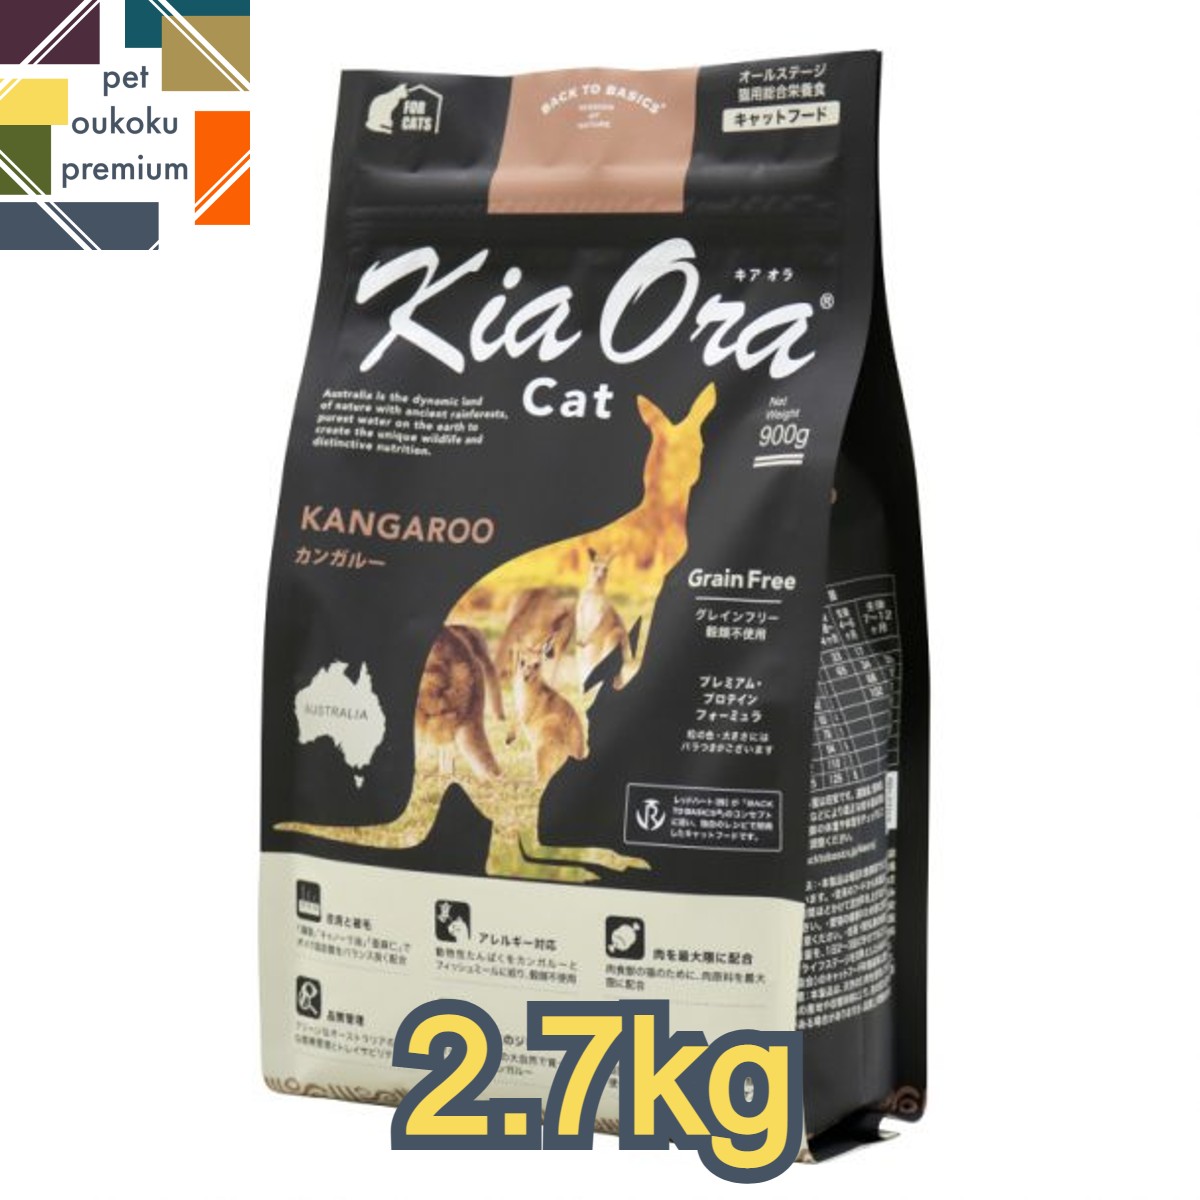 【あす楽対応】キアオラ 猫 カンガルー 2.7kg KiaOra 総合栄養食 キャットフード 全年齢 アダルト 成猫 シニア 高齢猫 4963974020756 送料無料